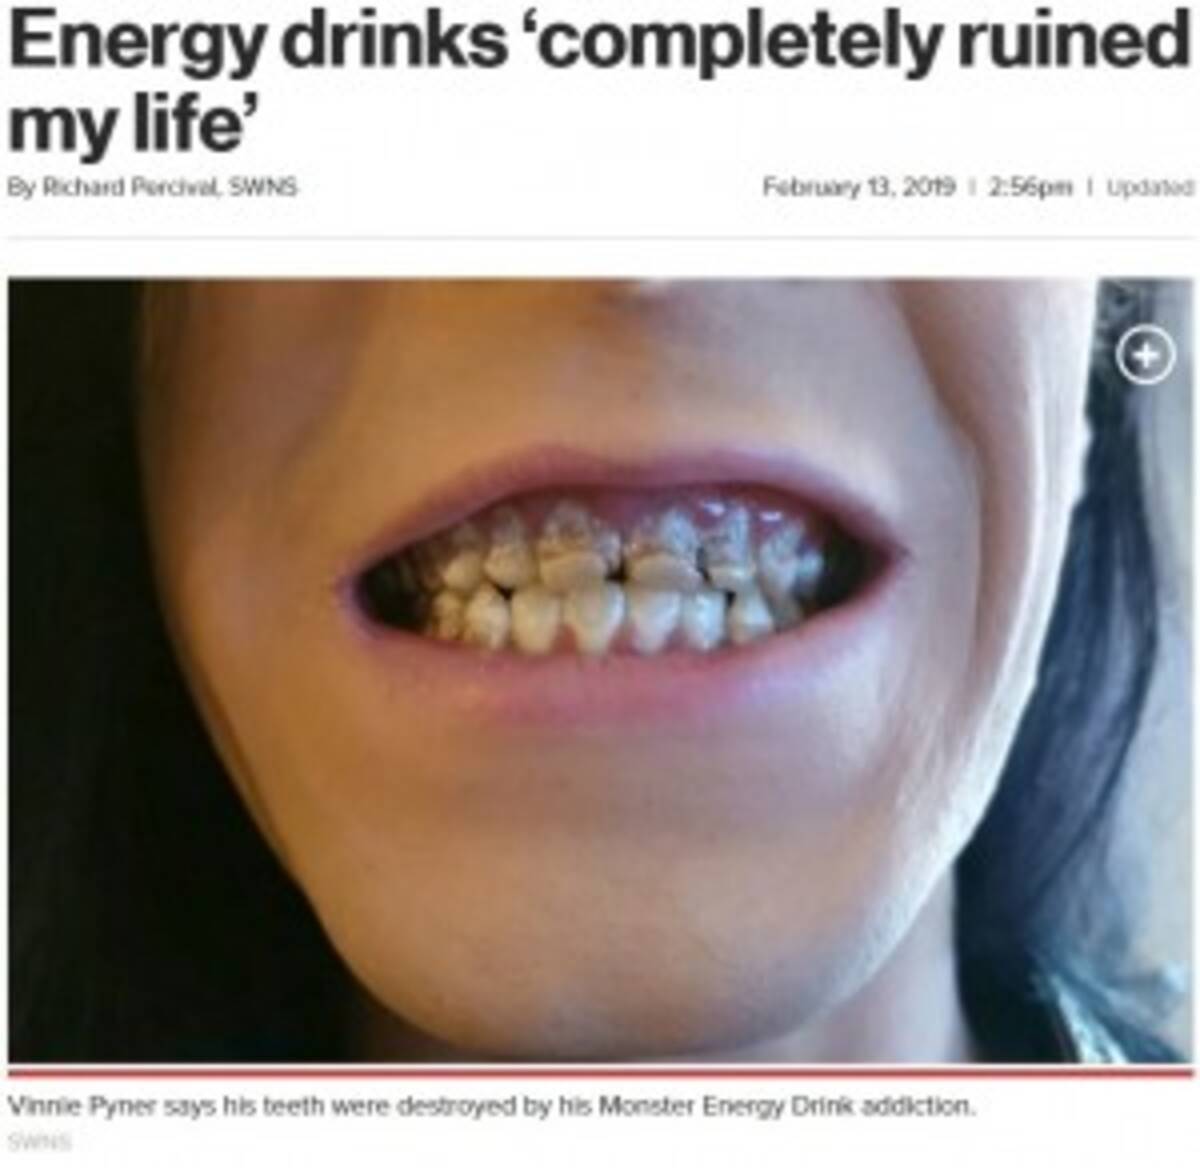 モンスターエナジーを飲み過ぎた男性 全ての歯がボロボロに 歯科医 これまで診た中で最も酷い 英 2019年2月19日 エキサイトニュース